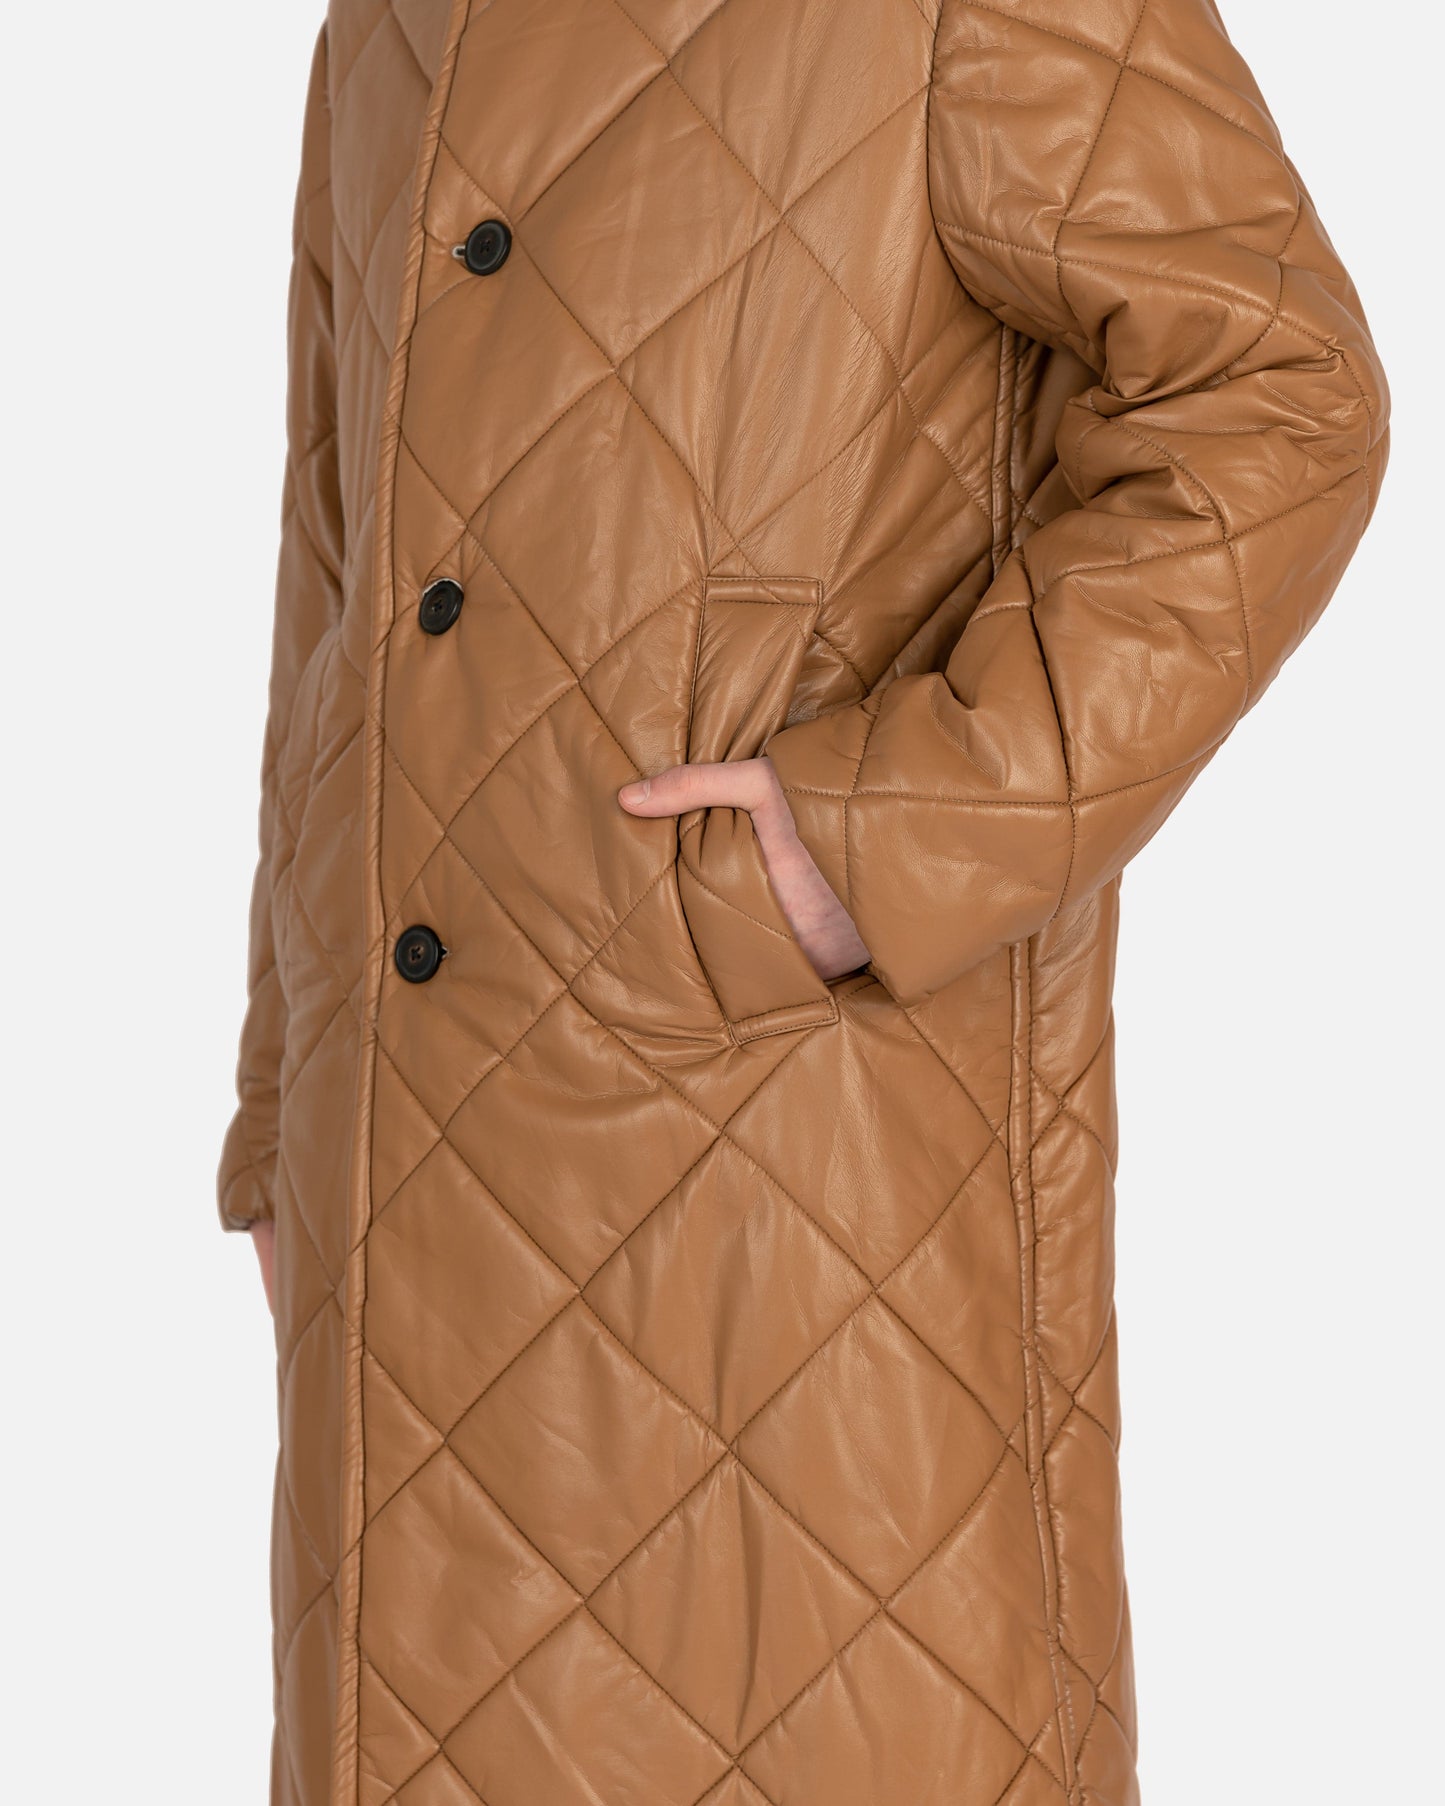 Dries Van Noten Men's Coat Redmore Coat in Camel